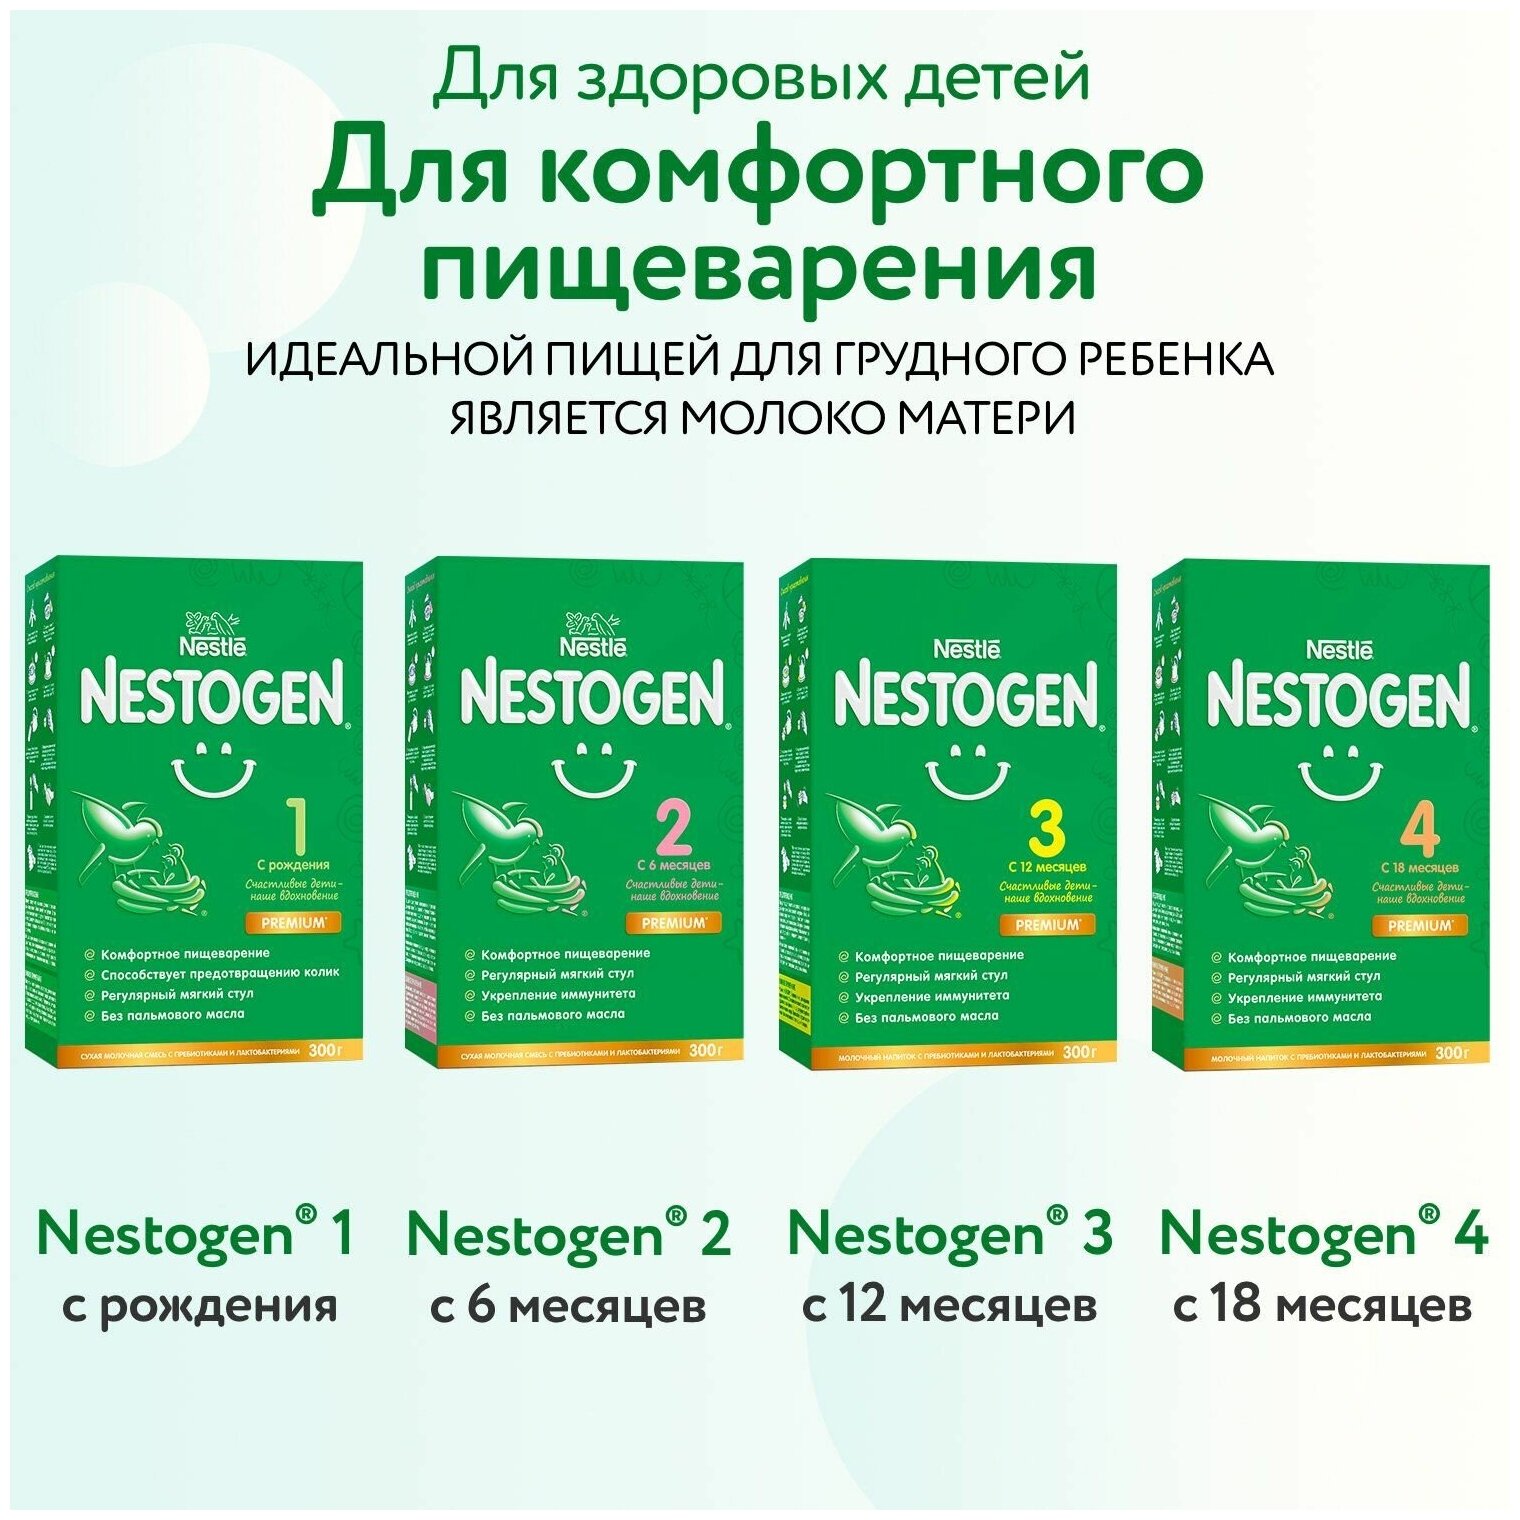 Nestogen® 4 Сухая молочная смесь для комфортного пищеварения с пребиотиками и лактобактериями, 600гр - фото №16